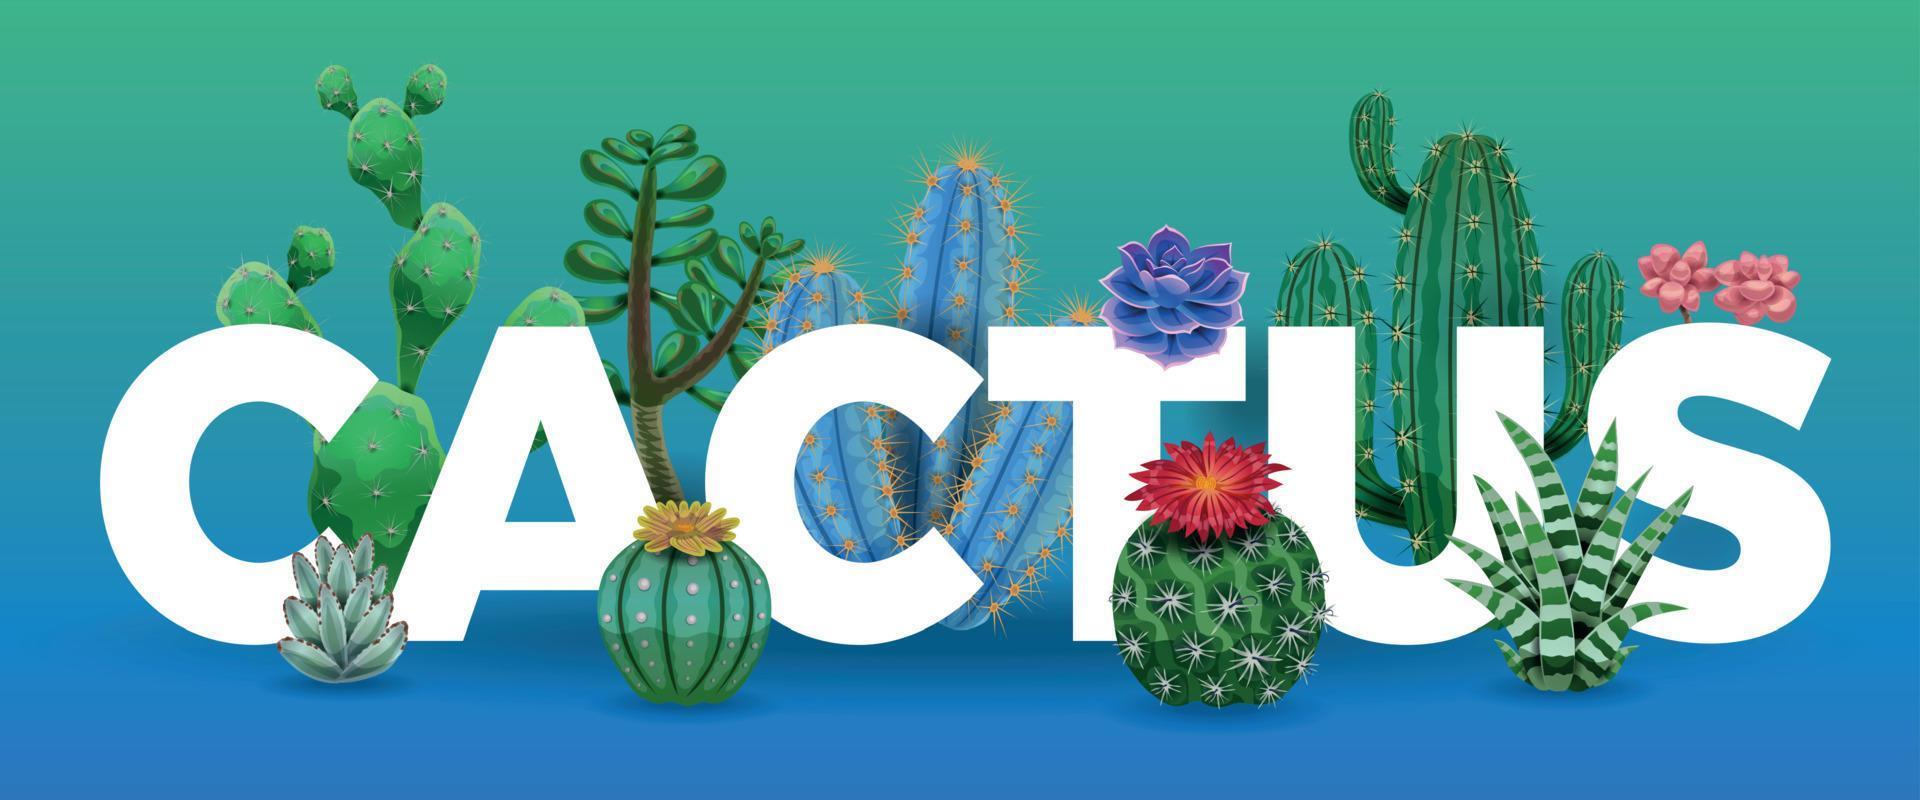 composizione di grandi lettere di cactus vettore